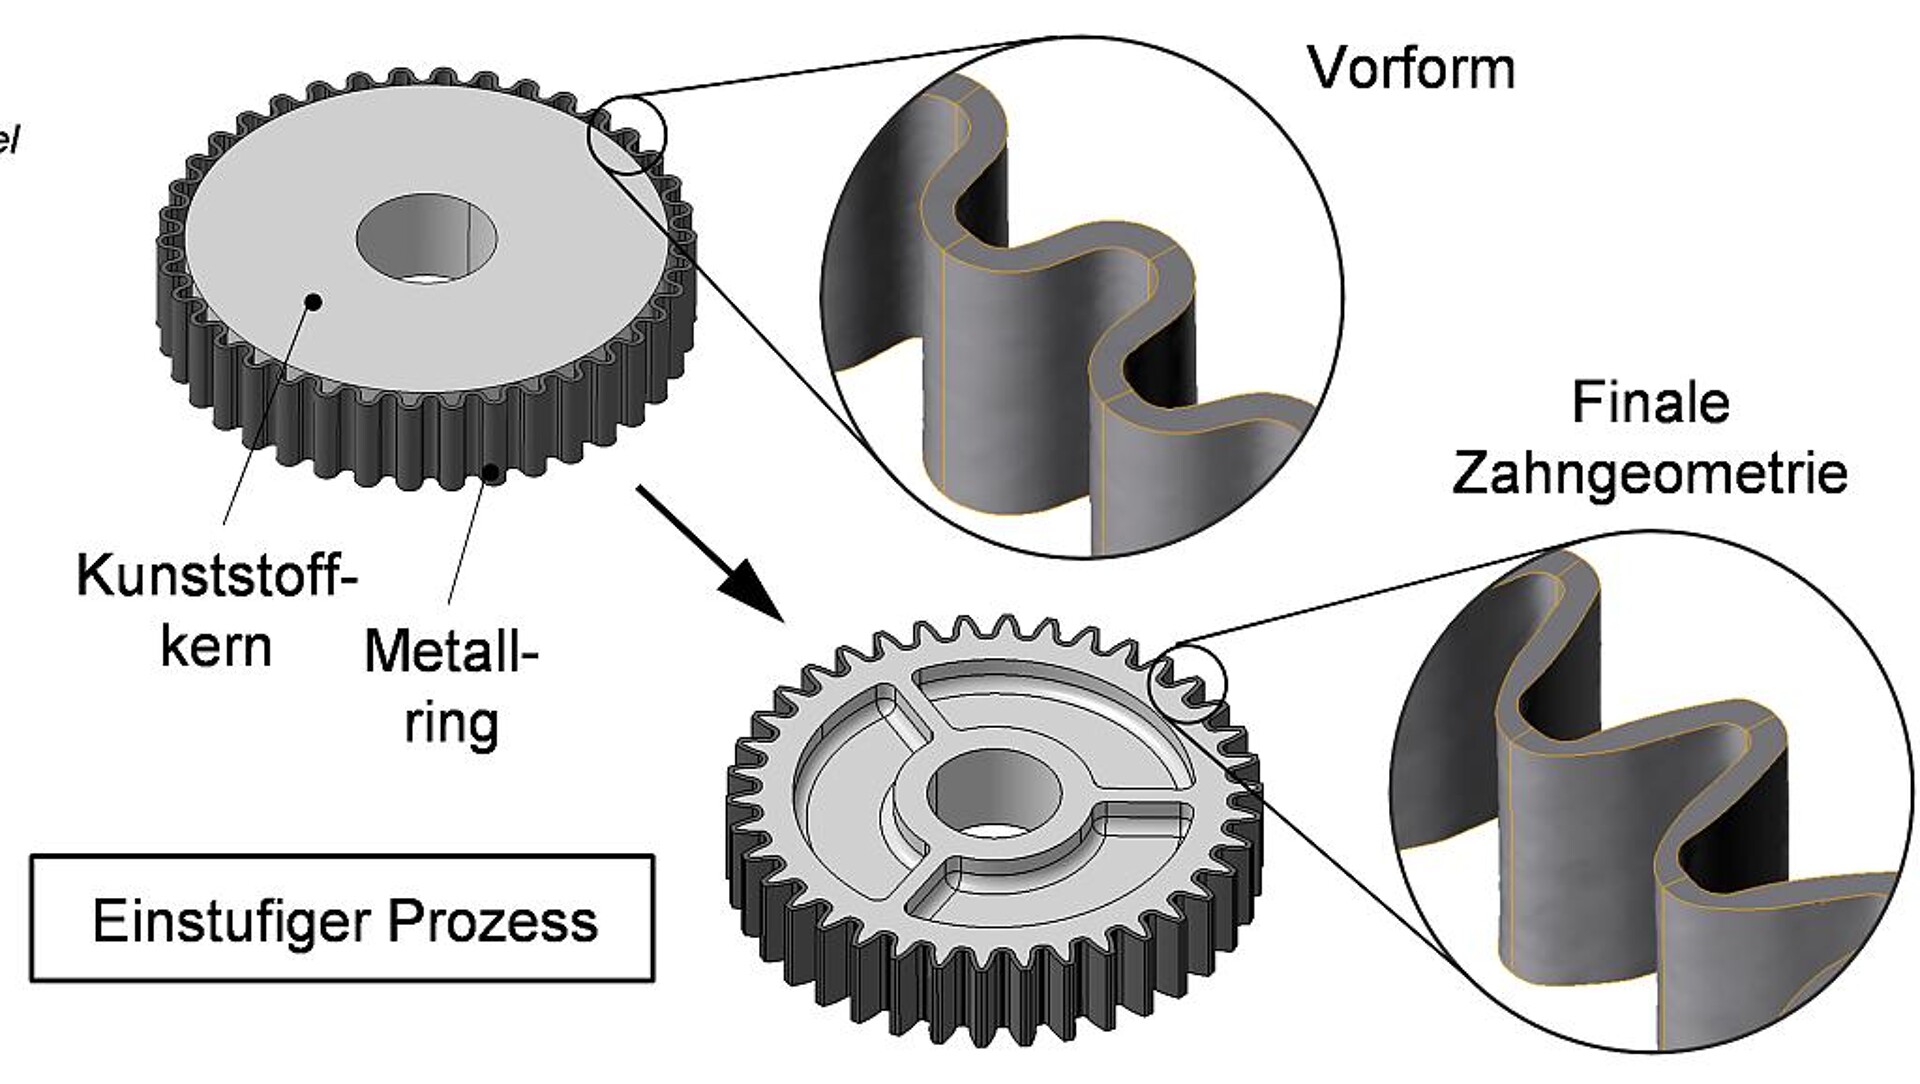 Beispiel für eine Hybridumformung: Durch Prägen eines Kunststoffkerns mit einem umliegenden metallischen Preform-Ring entsteht ein Zahnrad. Bei diesem Prozess ändert sich auch die Geometrie des metallischem Preforms. (Abb.: IKT)